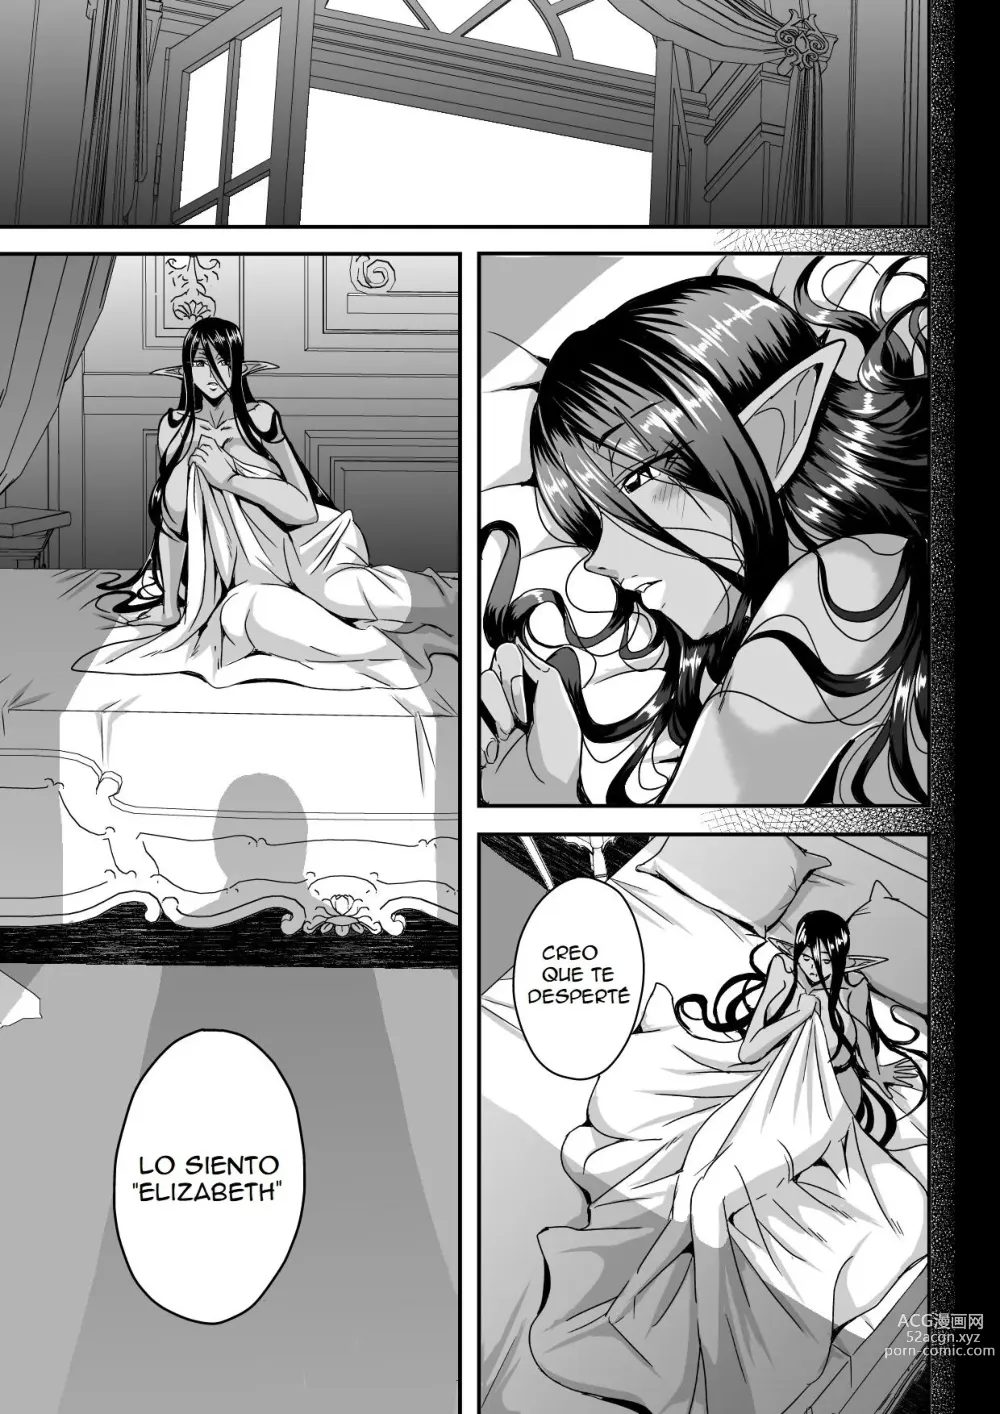 Page 50 of doujinshi Destruire mil mundos con tal de ir a la cama con mi señor una vez mas